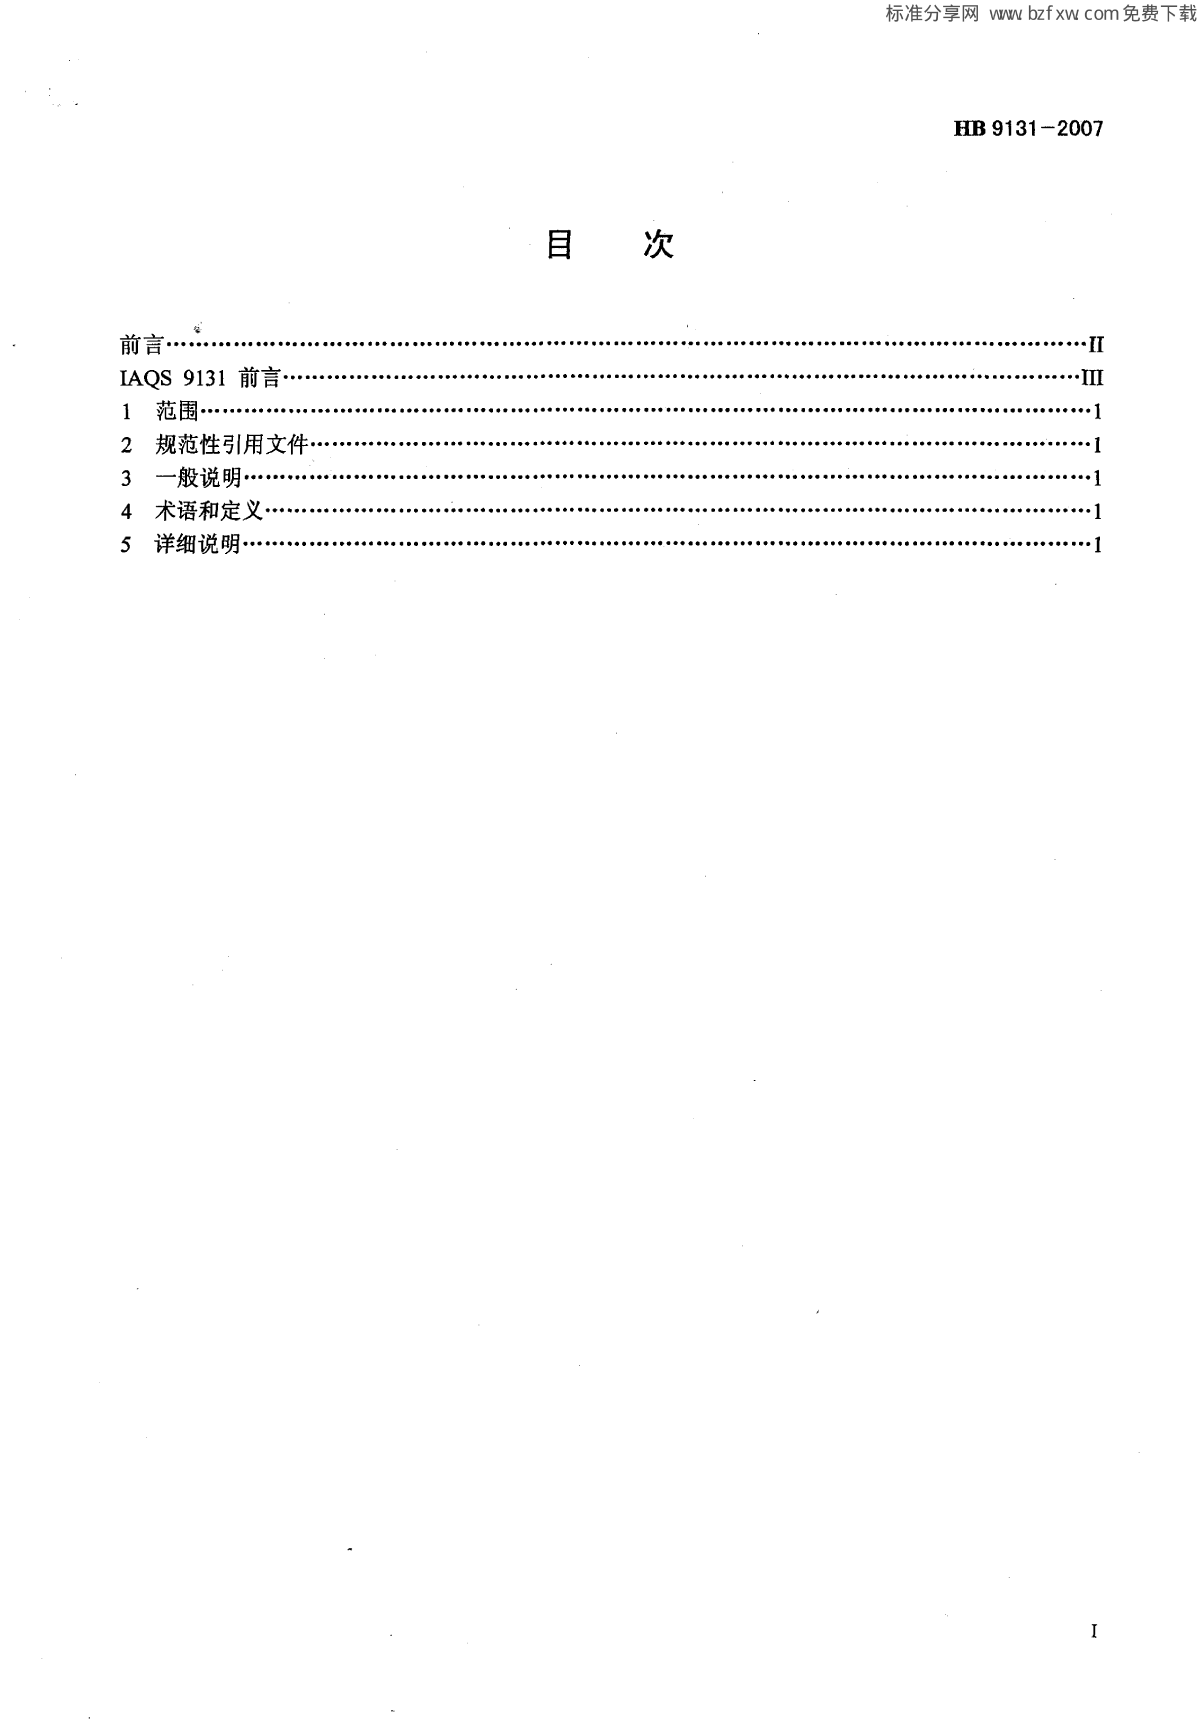 HB 9131-2007 不合格品的文件要求-图二